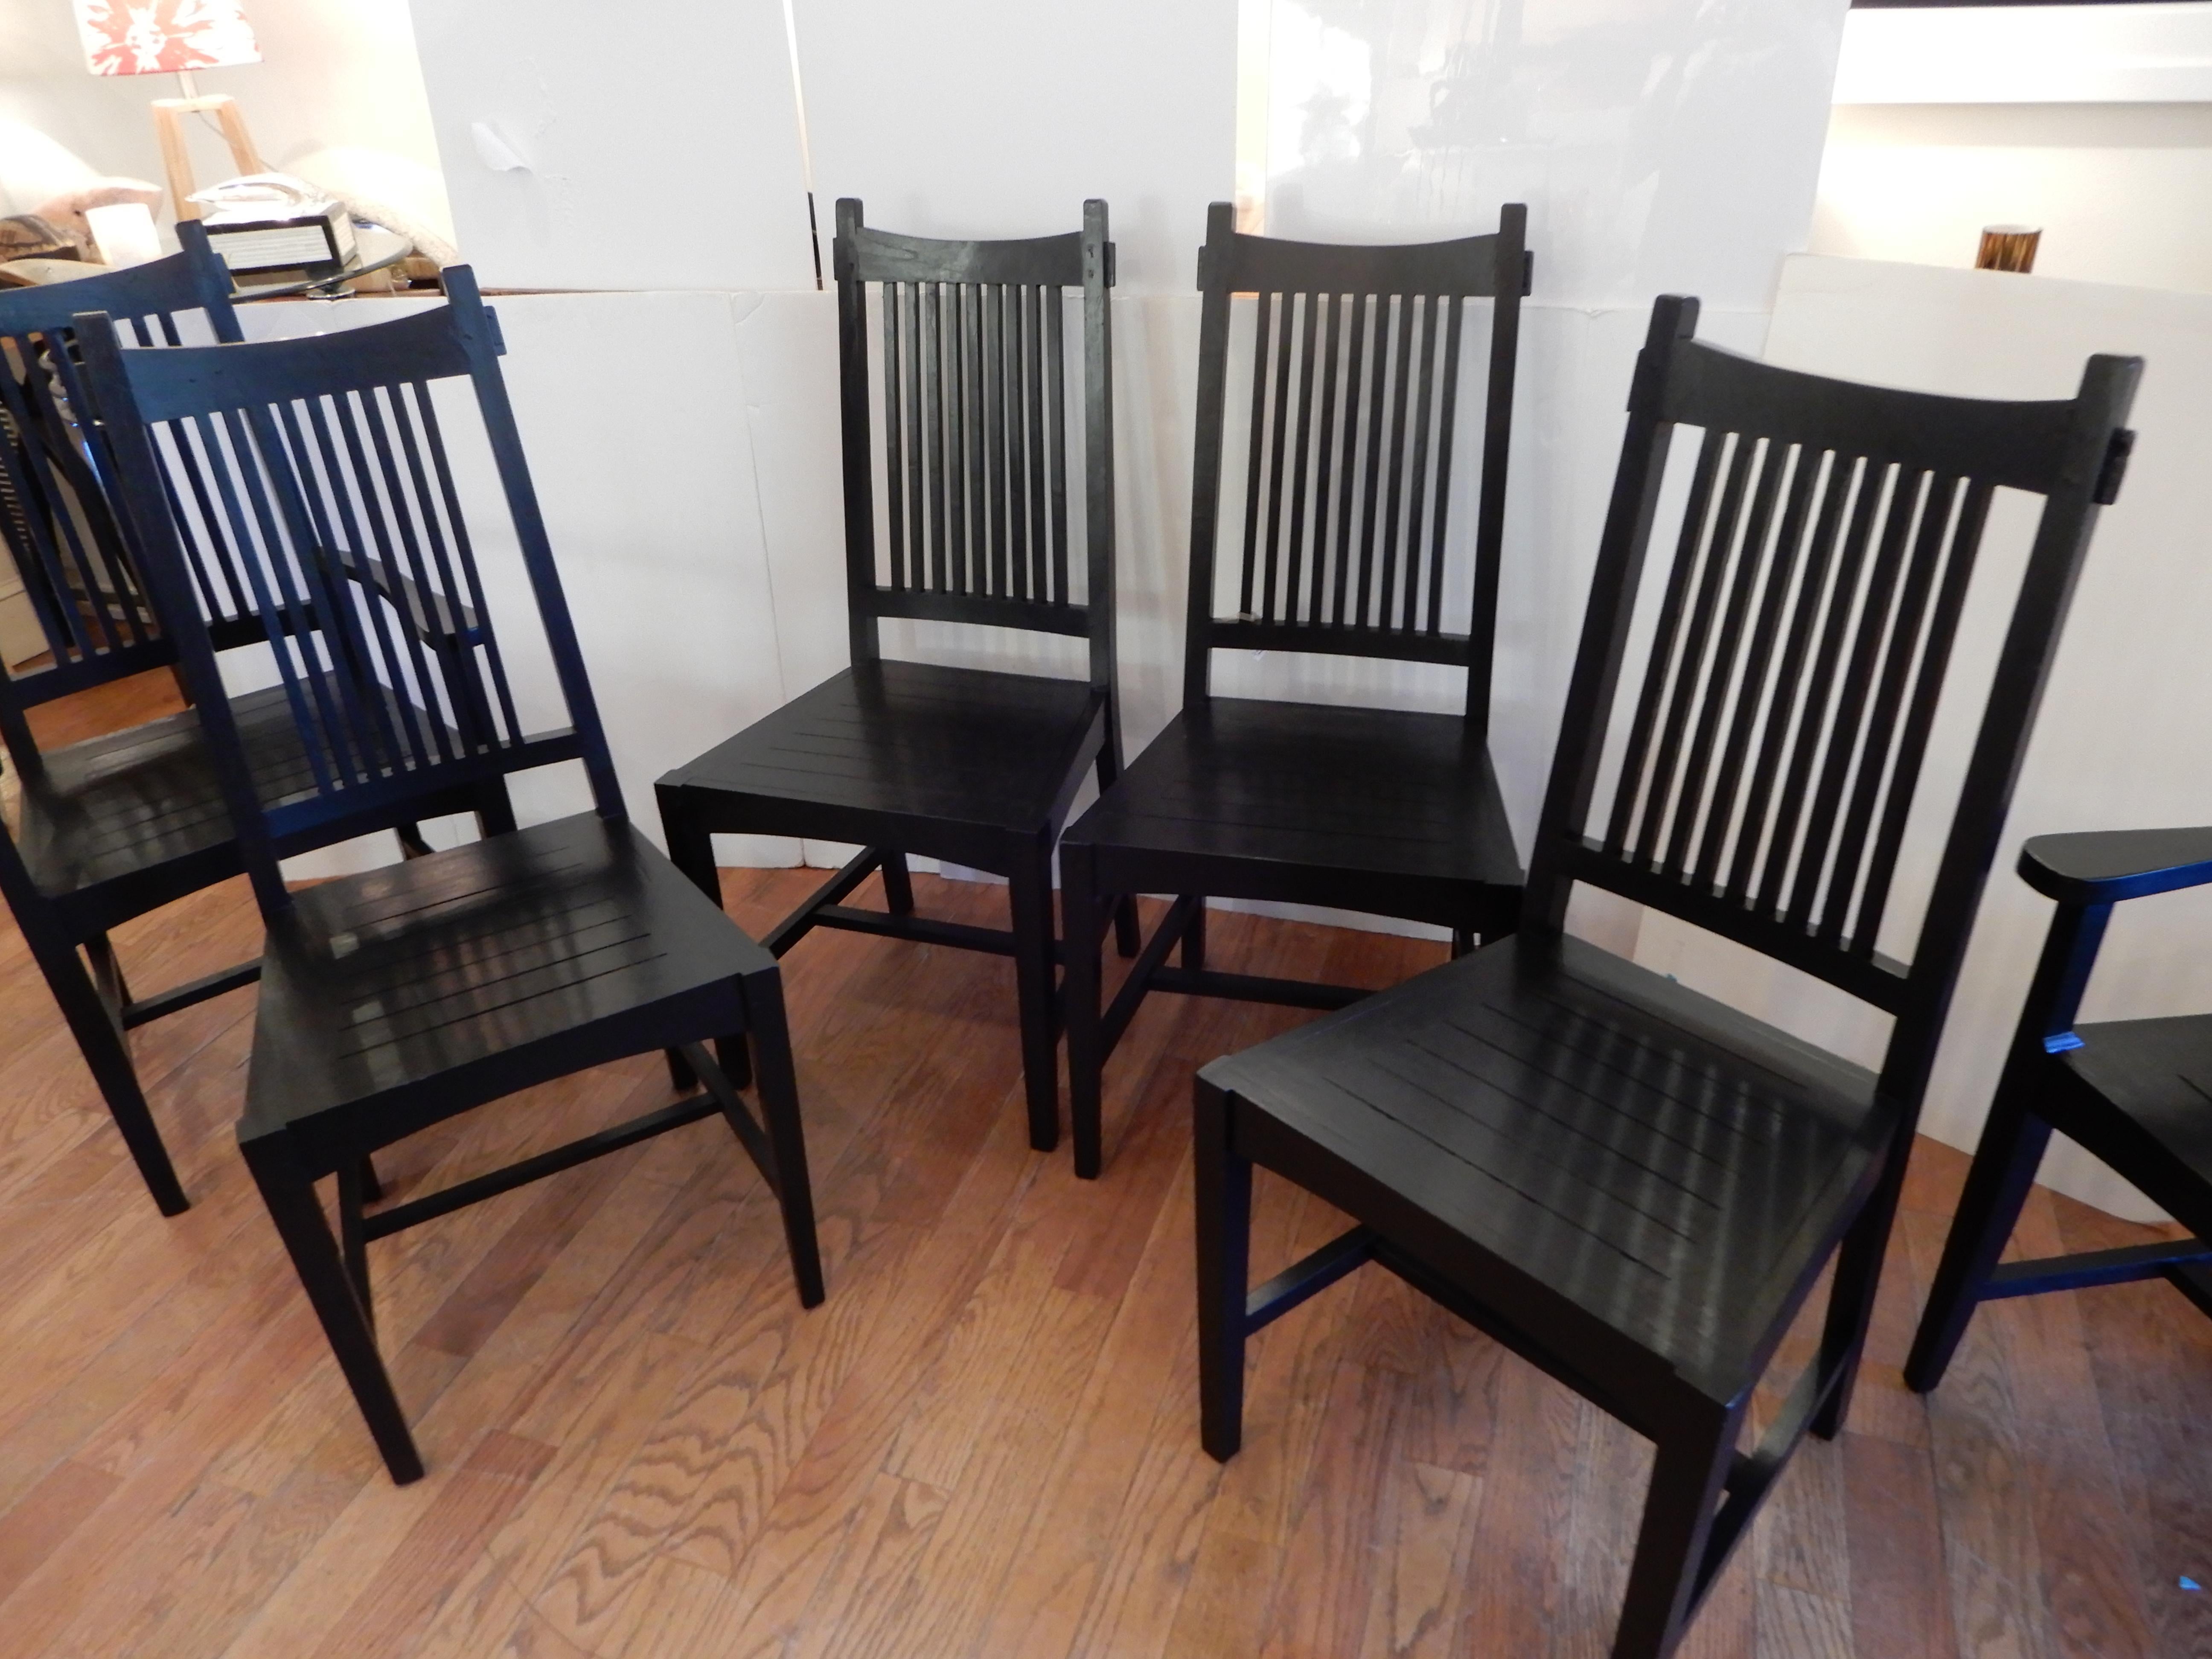 Il y a deux fauteuils et quatre chaises d'appoint, tous en parfait état, construits à la main en bois dur de Java par le Studio Craft artist David Smith.
David, connu pour ses meubles de campagne américains impeccablement fabriqués à la main, a